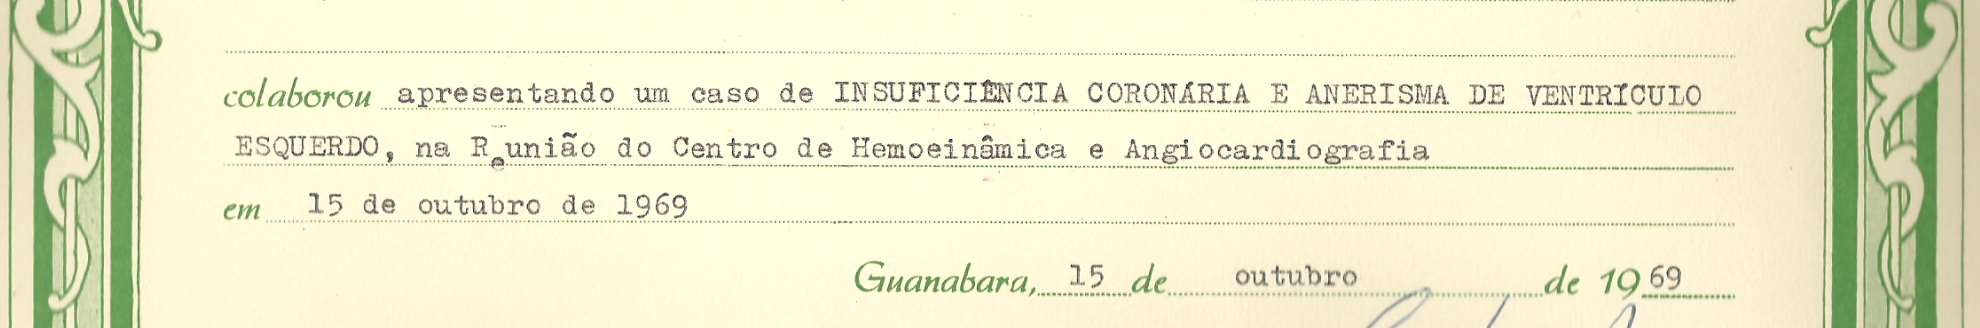 1969:Estado da Guanabara IECAC Insuficiência